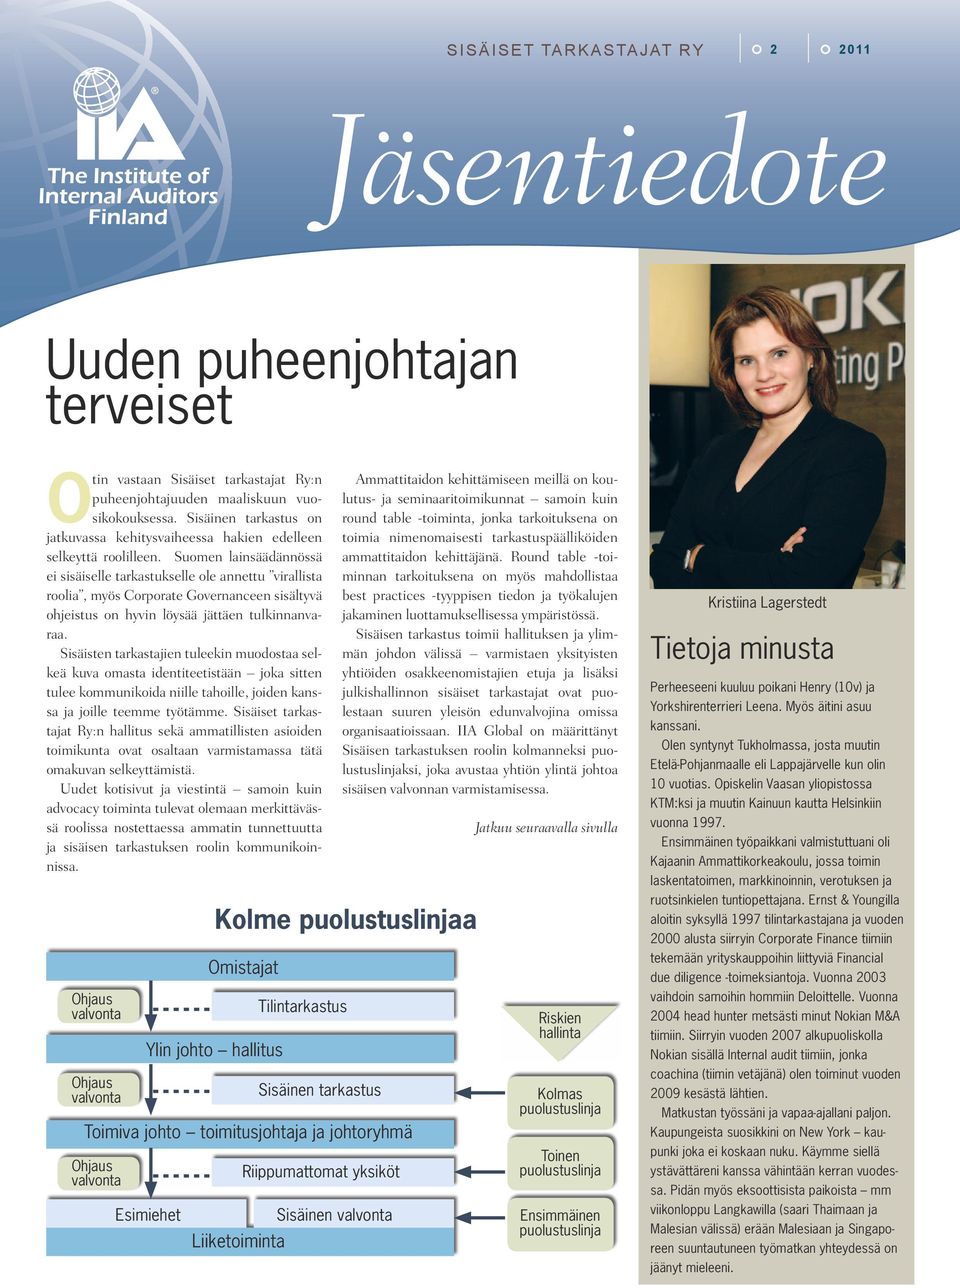 Suomen lainsäädännössä ei sisäiselle tarkastukselle ole annettu virallista roolia, myös Corporate Governanceen sisältyvä ohjeistus on hyvin löysää jättäen tulkinnanvaraa.